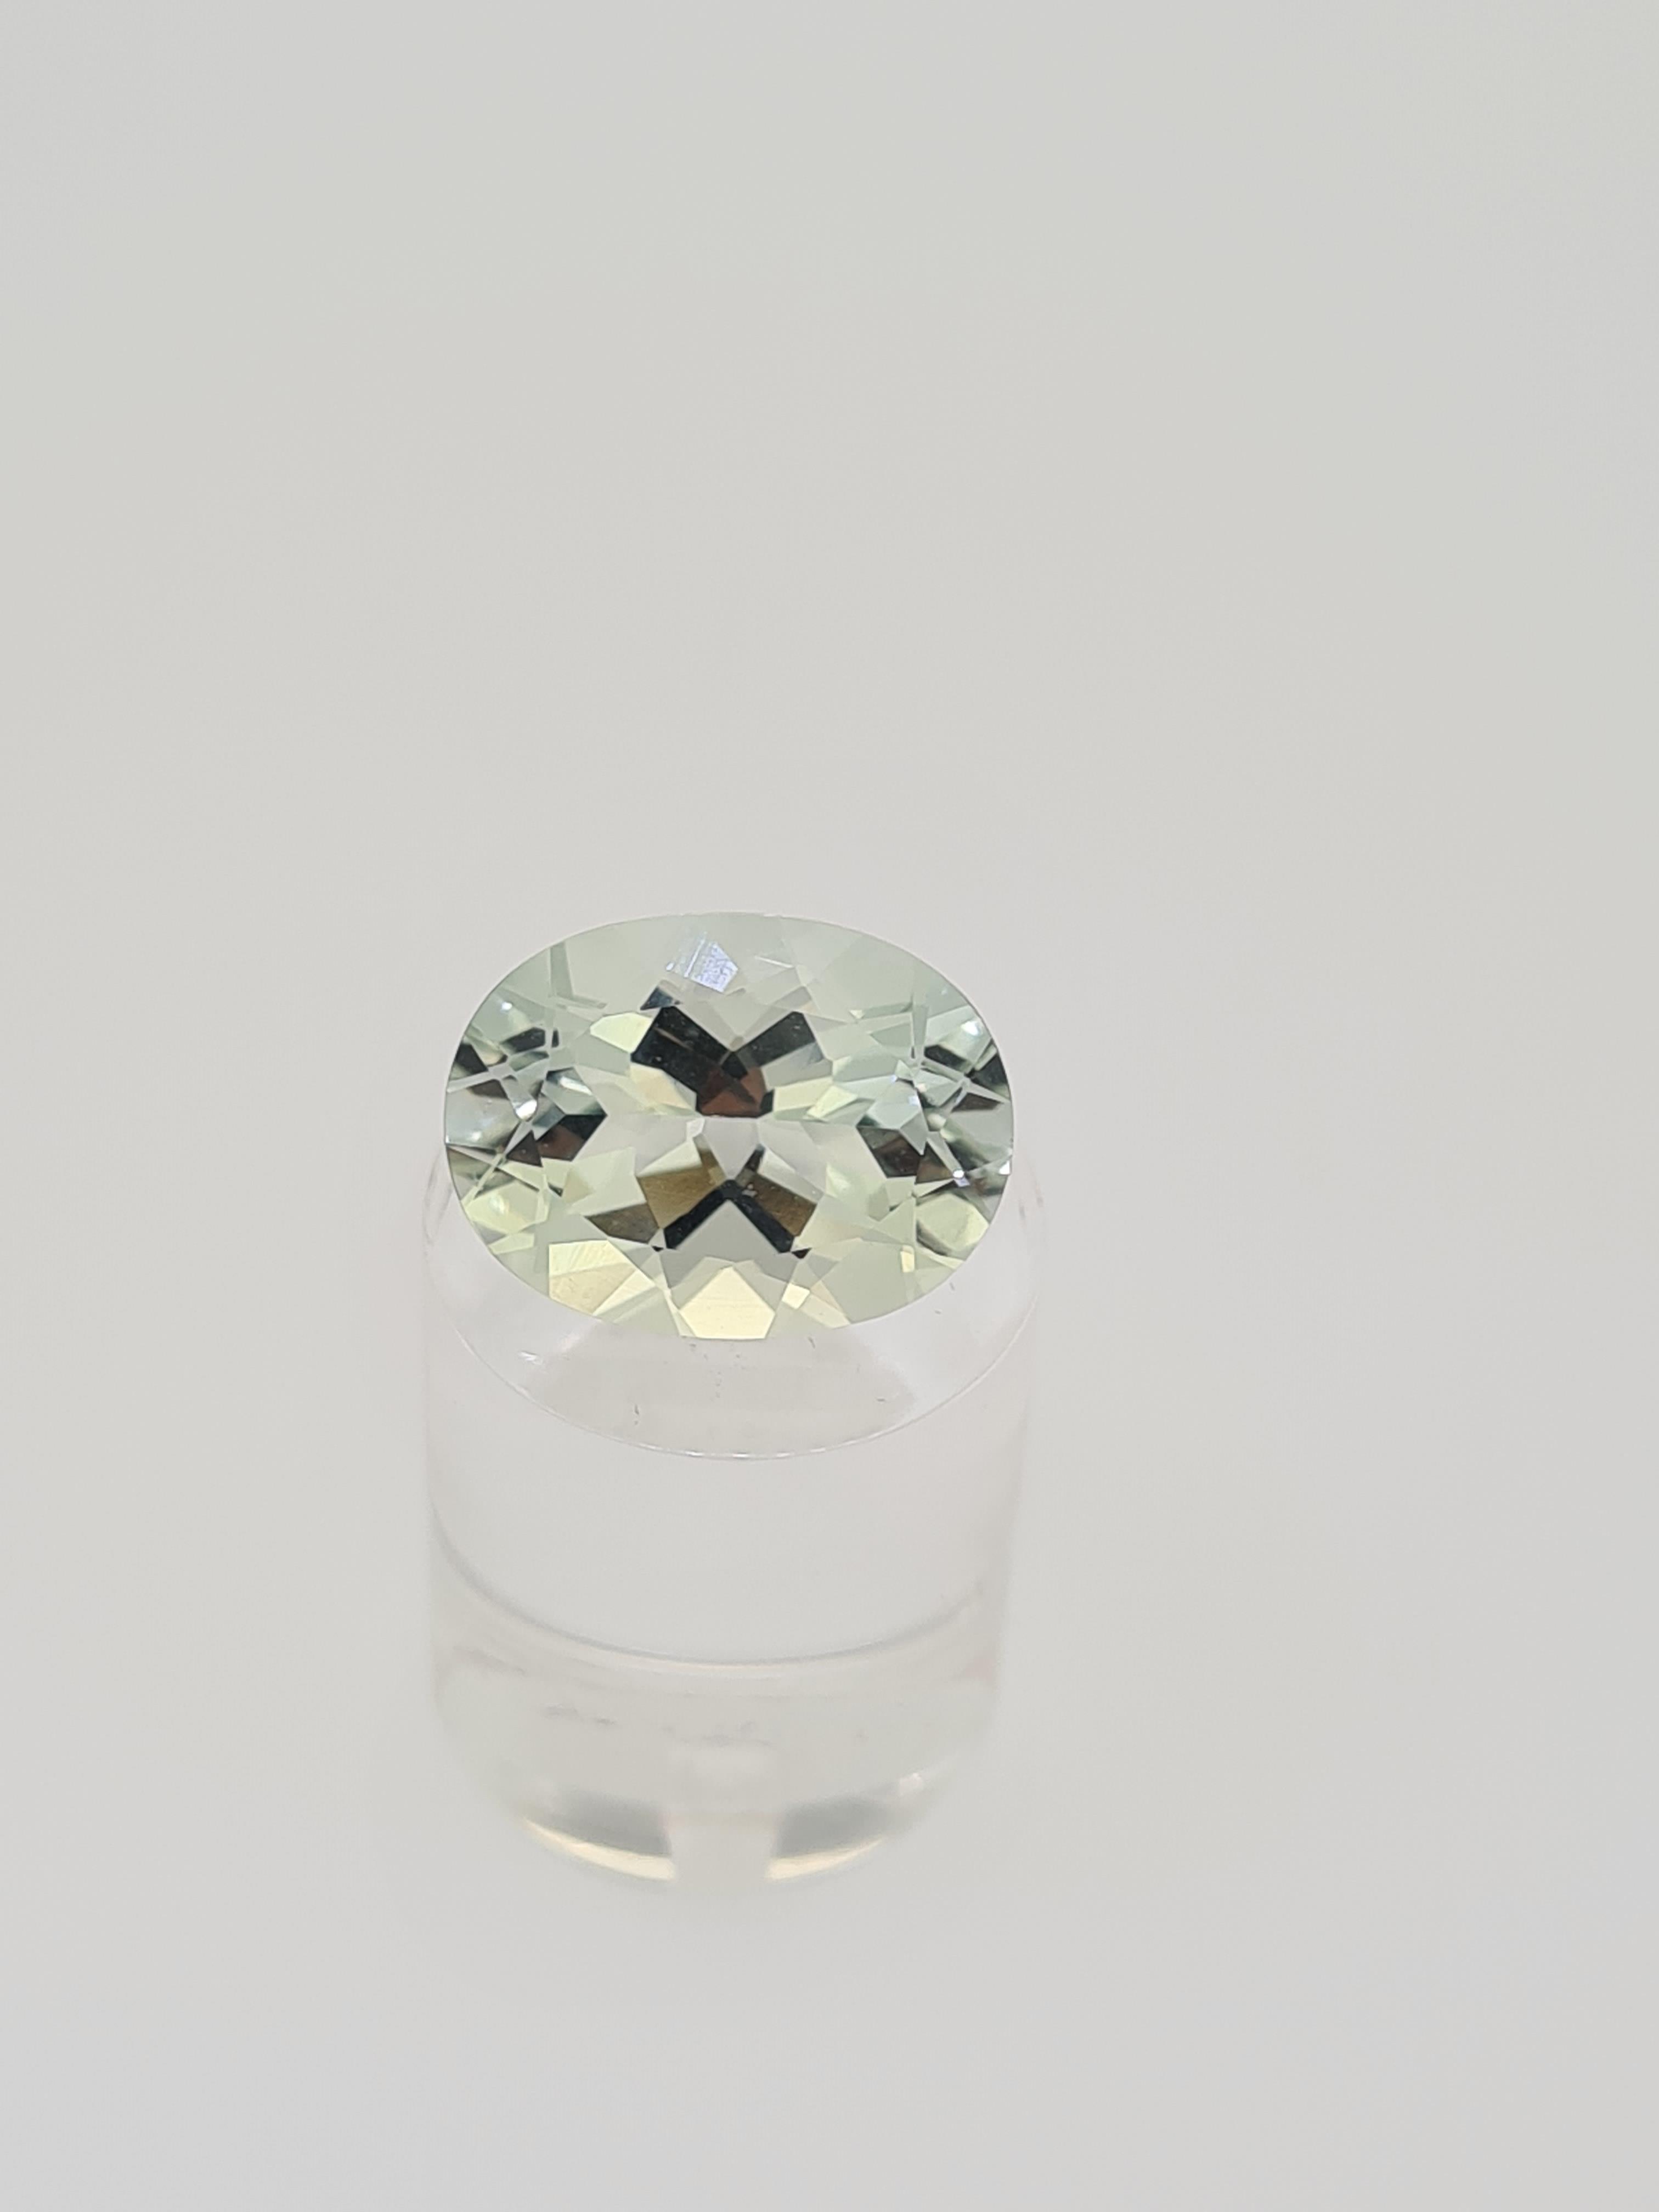 Green amethyst oval cut gem stone